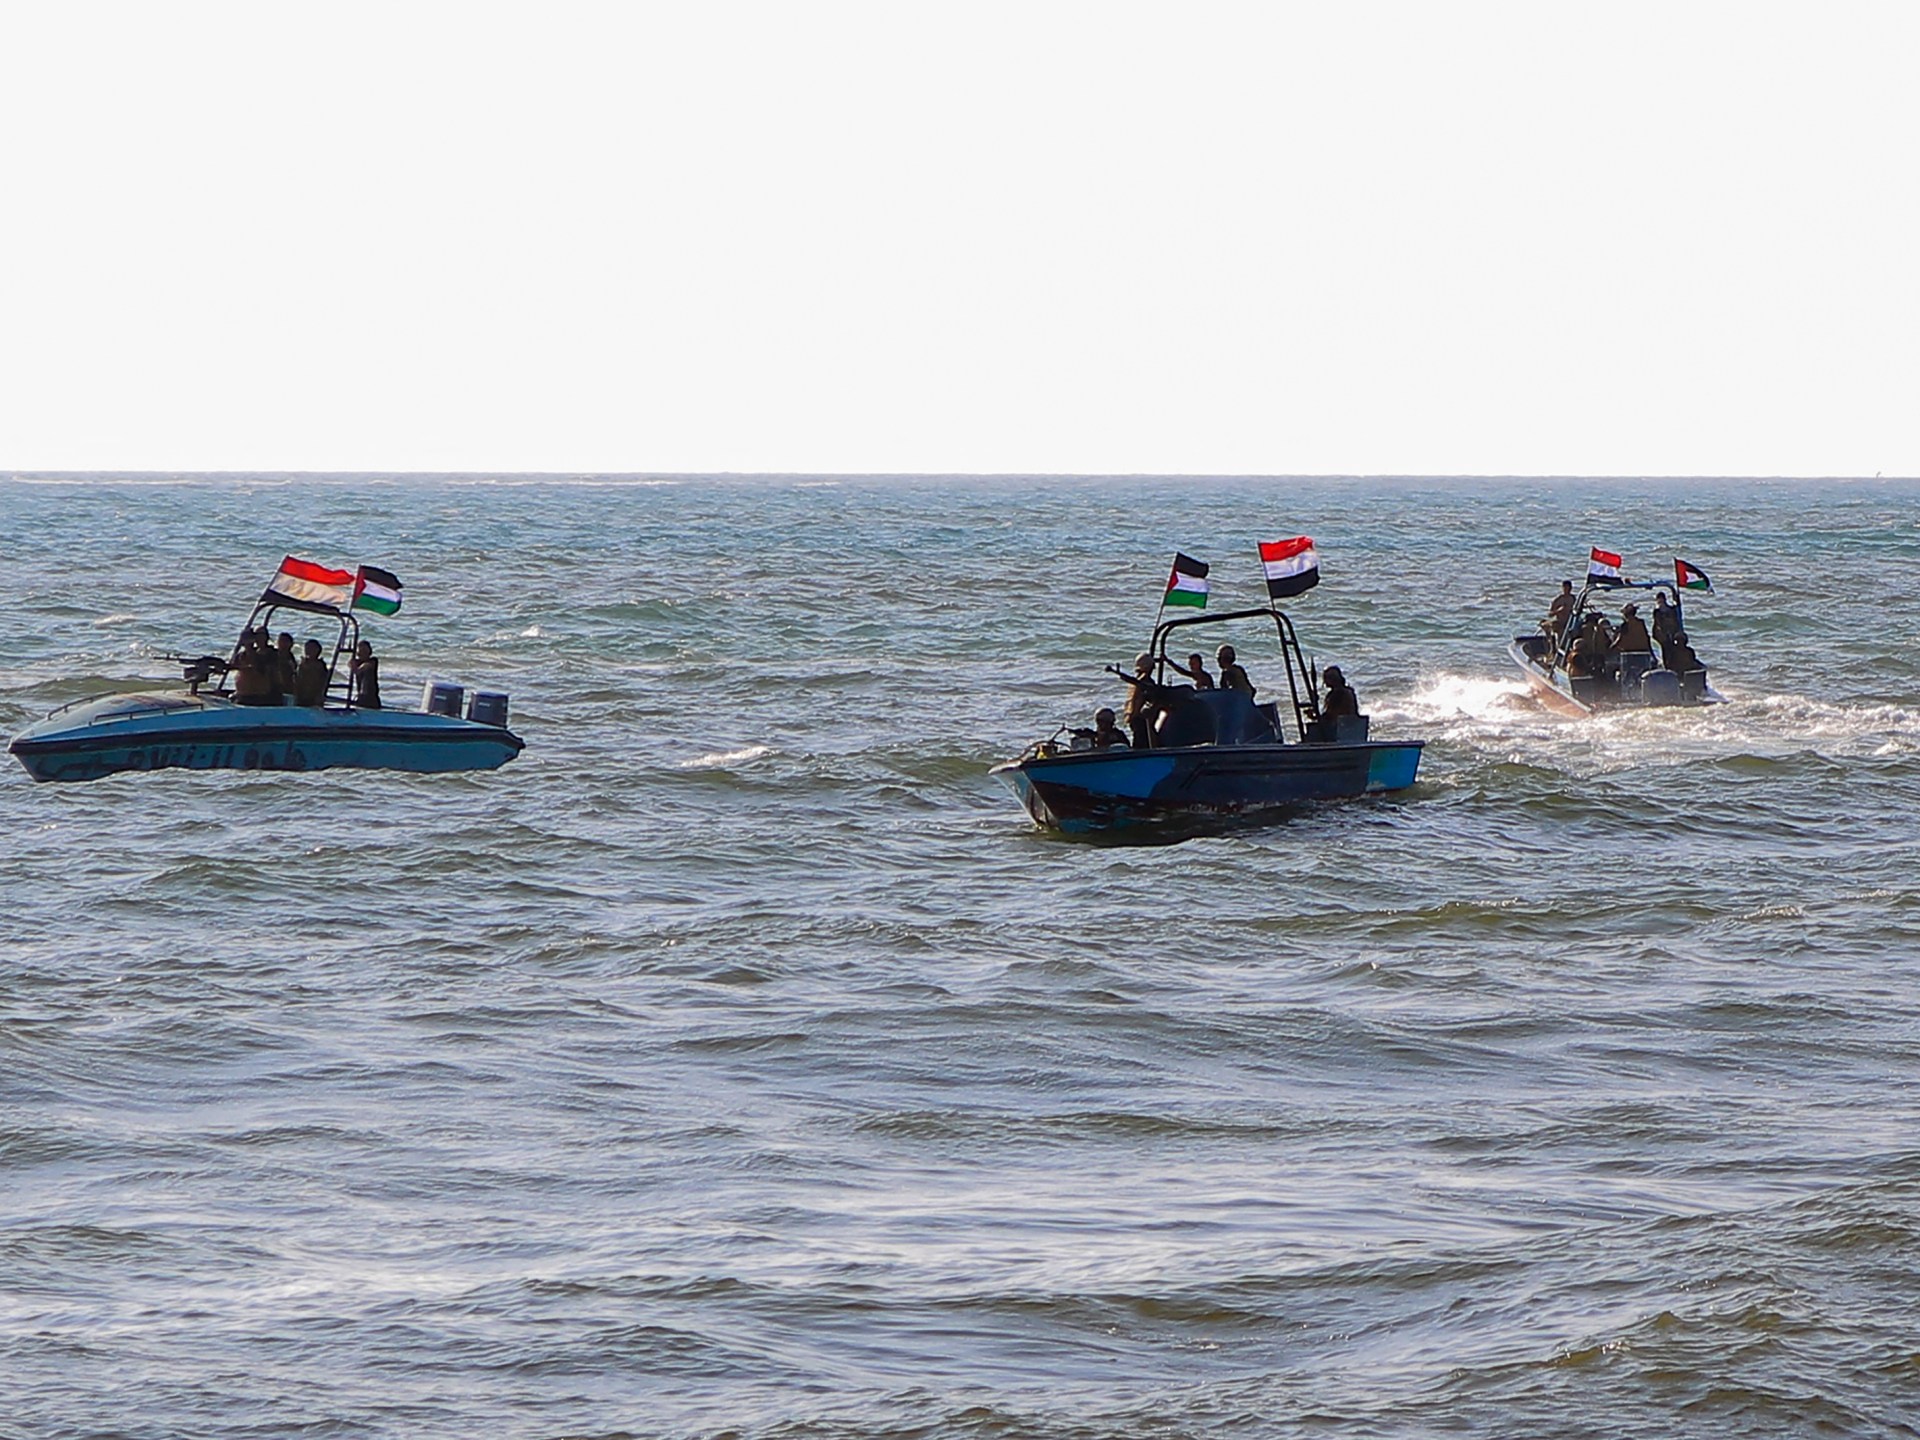 الحوثيون: أي تحالف أميركي لن يوفر الأمن للسفن الإسرائيلية | أخبار – البوكس نيوز